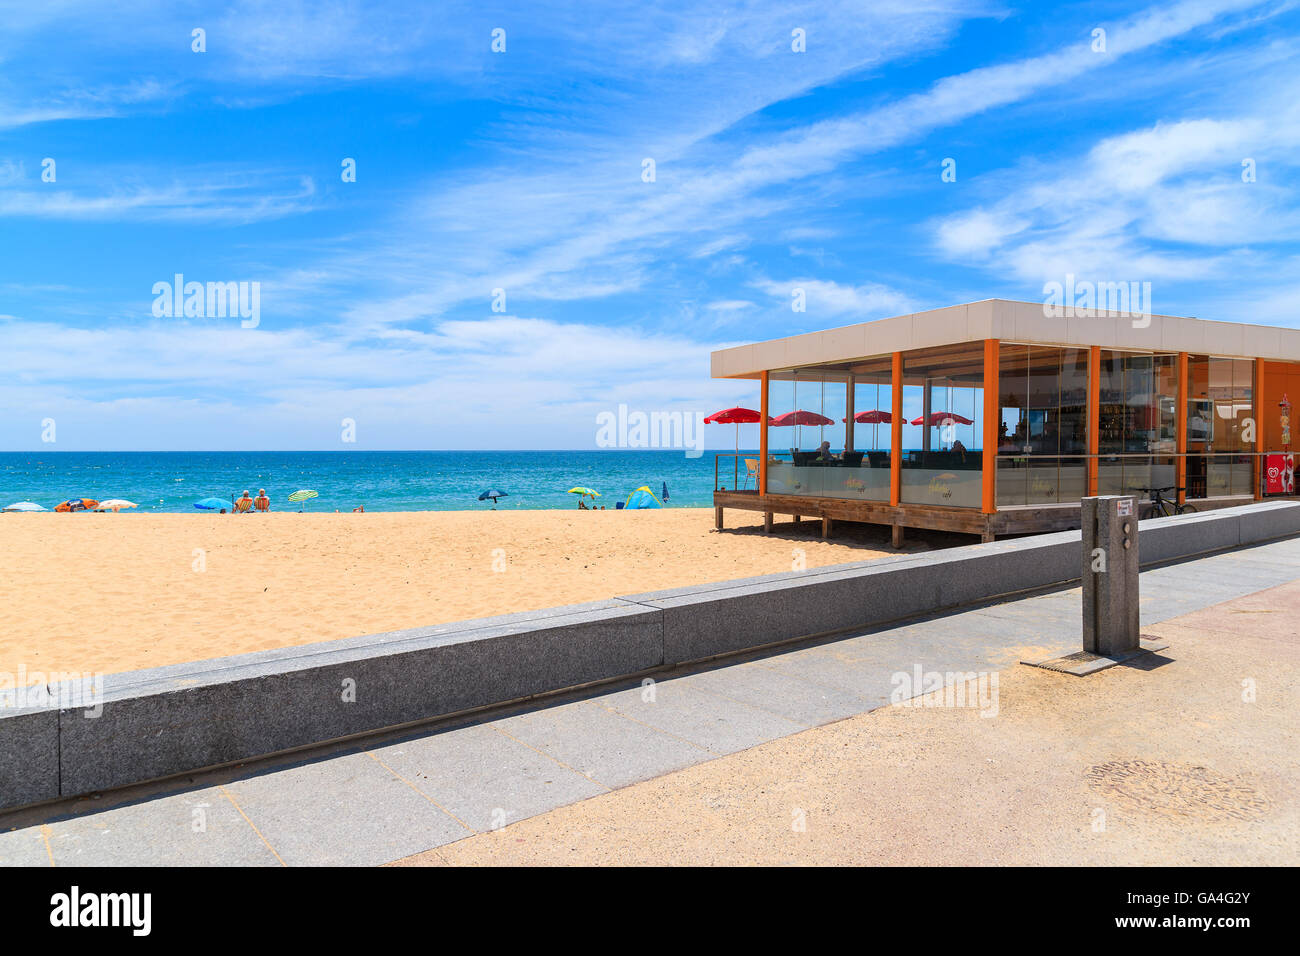 ARMACAO DE PERA Beach, Portogallo - 17 Maggio 2015: ristorante a Armacao de Pera beach nella regione di Algarve che è la più popolare destinazione turistica in Portogallo. Foto Stock